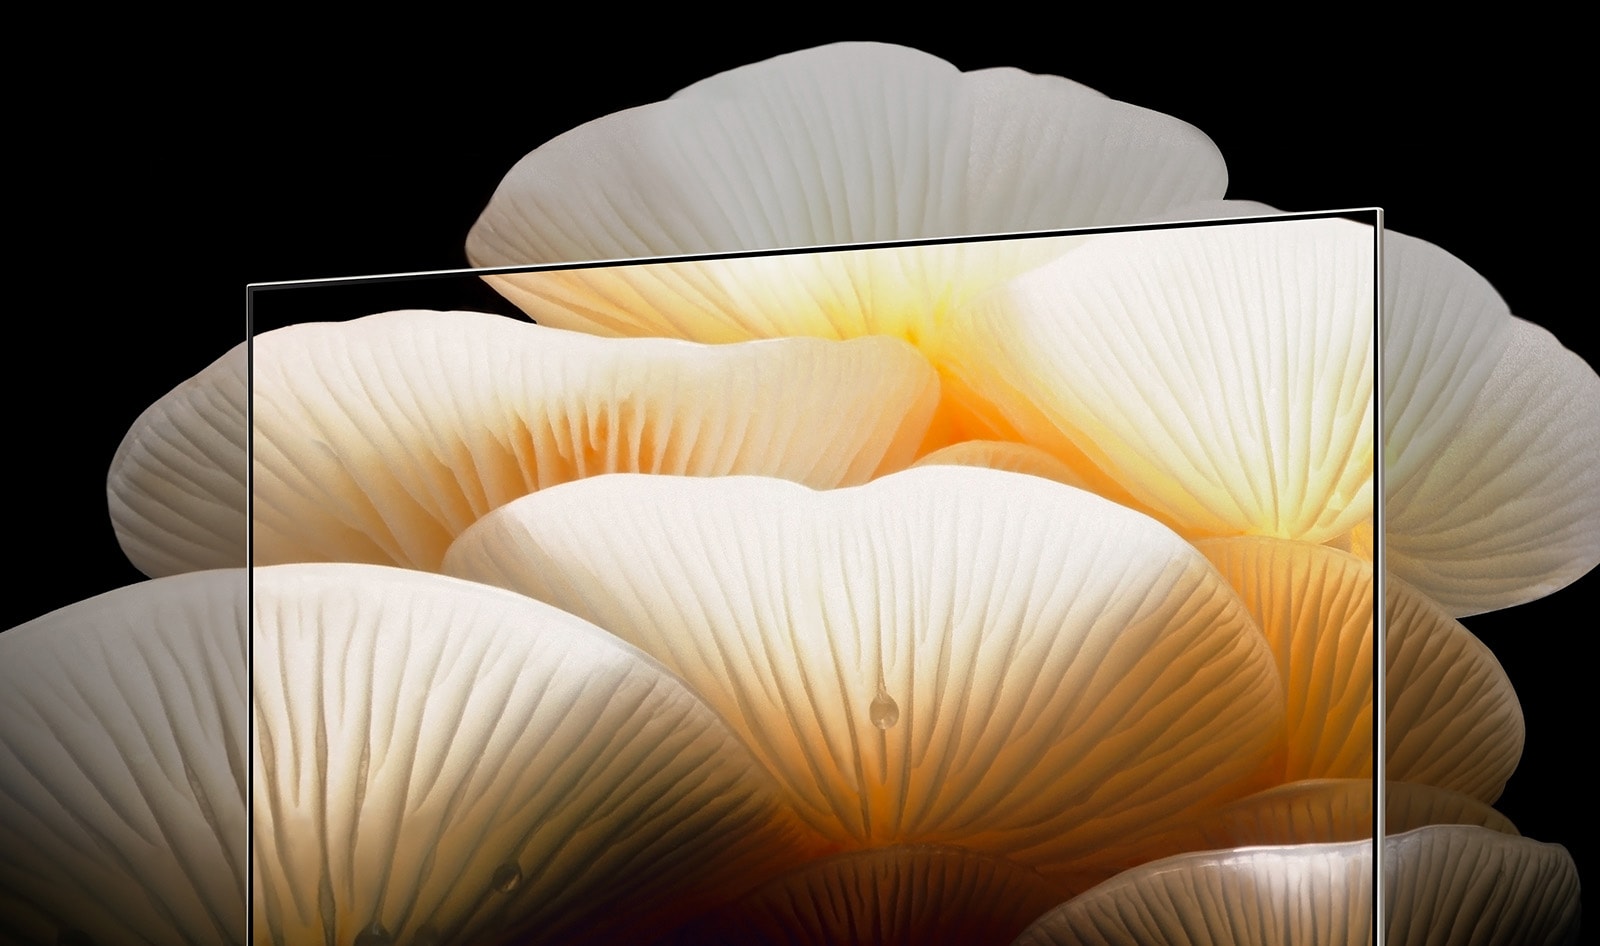 Ecranul Posé arata detaliile luminoase si clare ale ciupercilor albe pe masura ce se extind dincolo de cadrul televizorului.